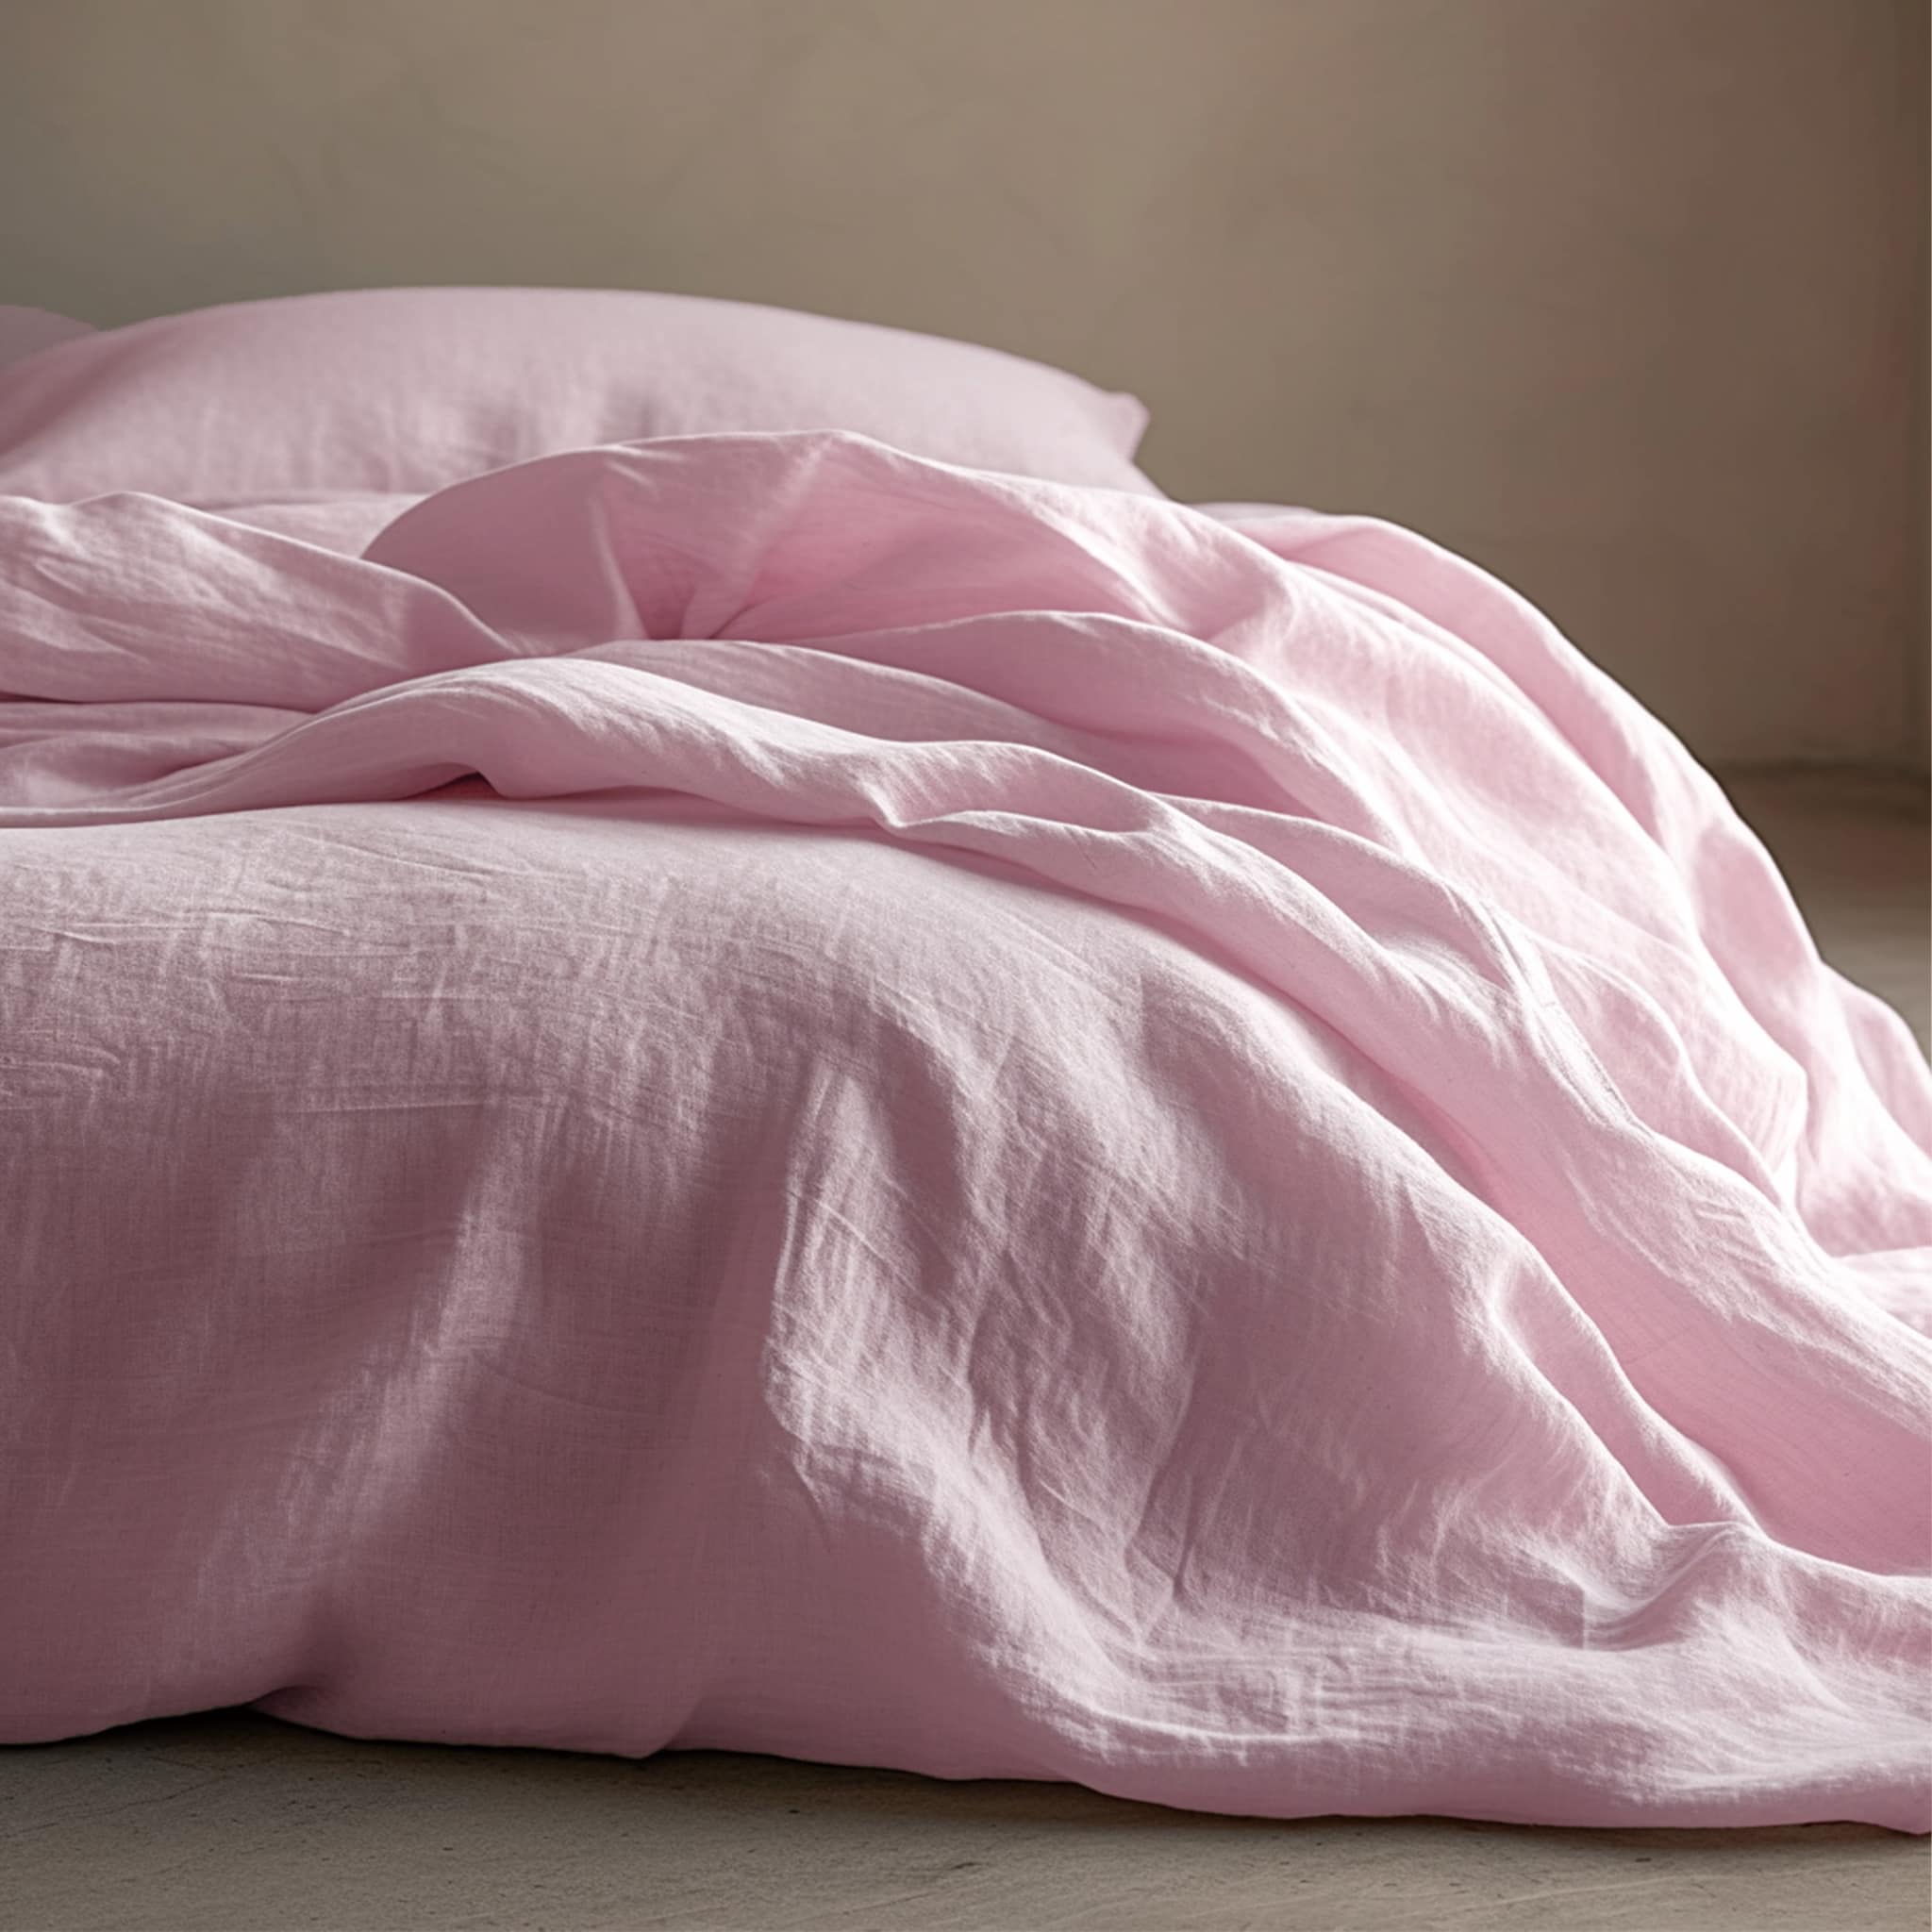 Soft Pink Linen Flat Sheet